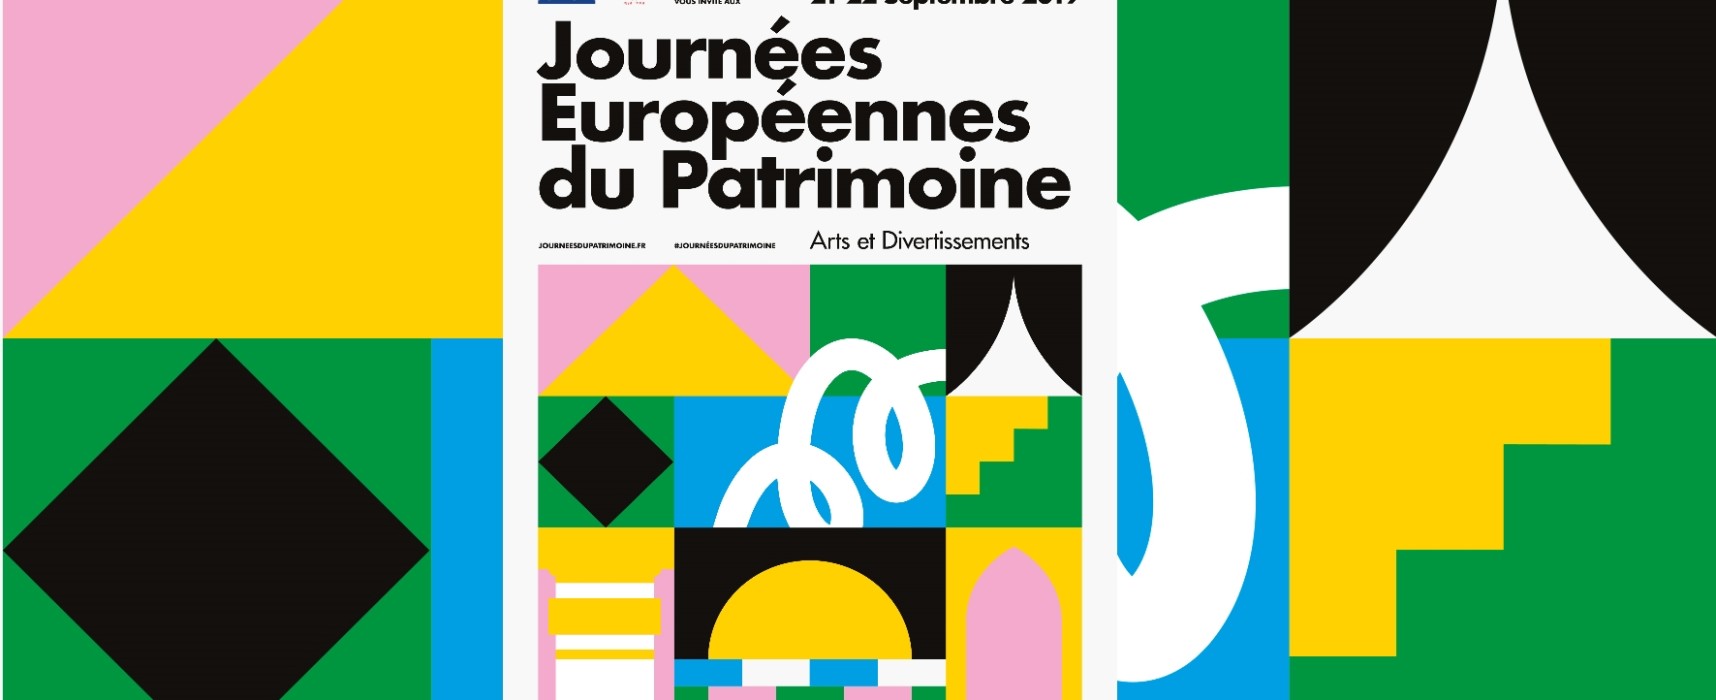 Journées européennes du patrimoine #JEP2019